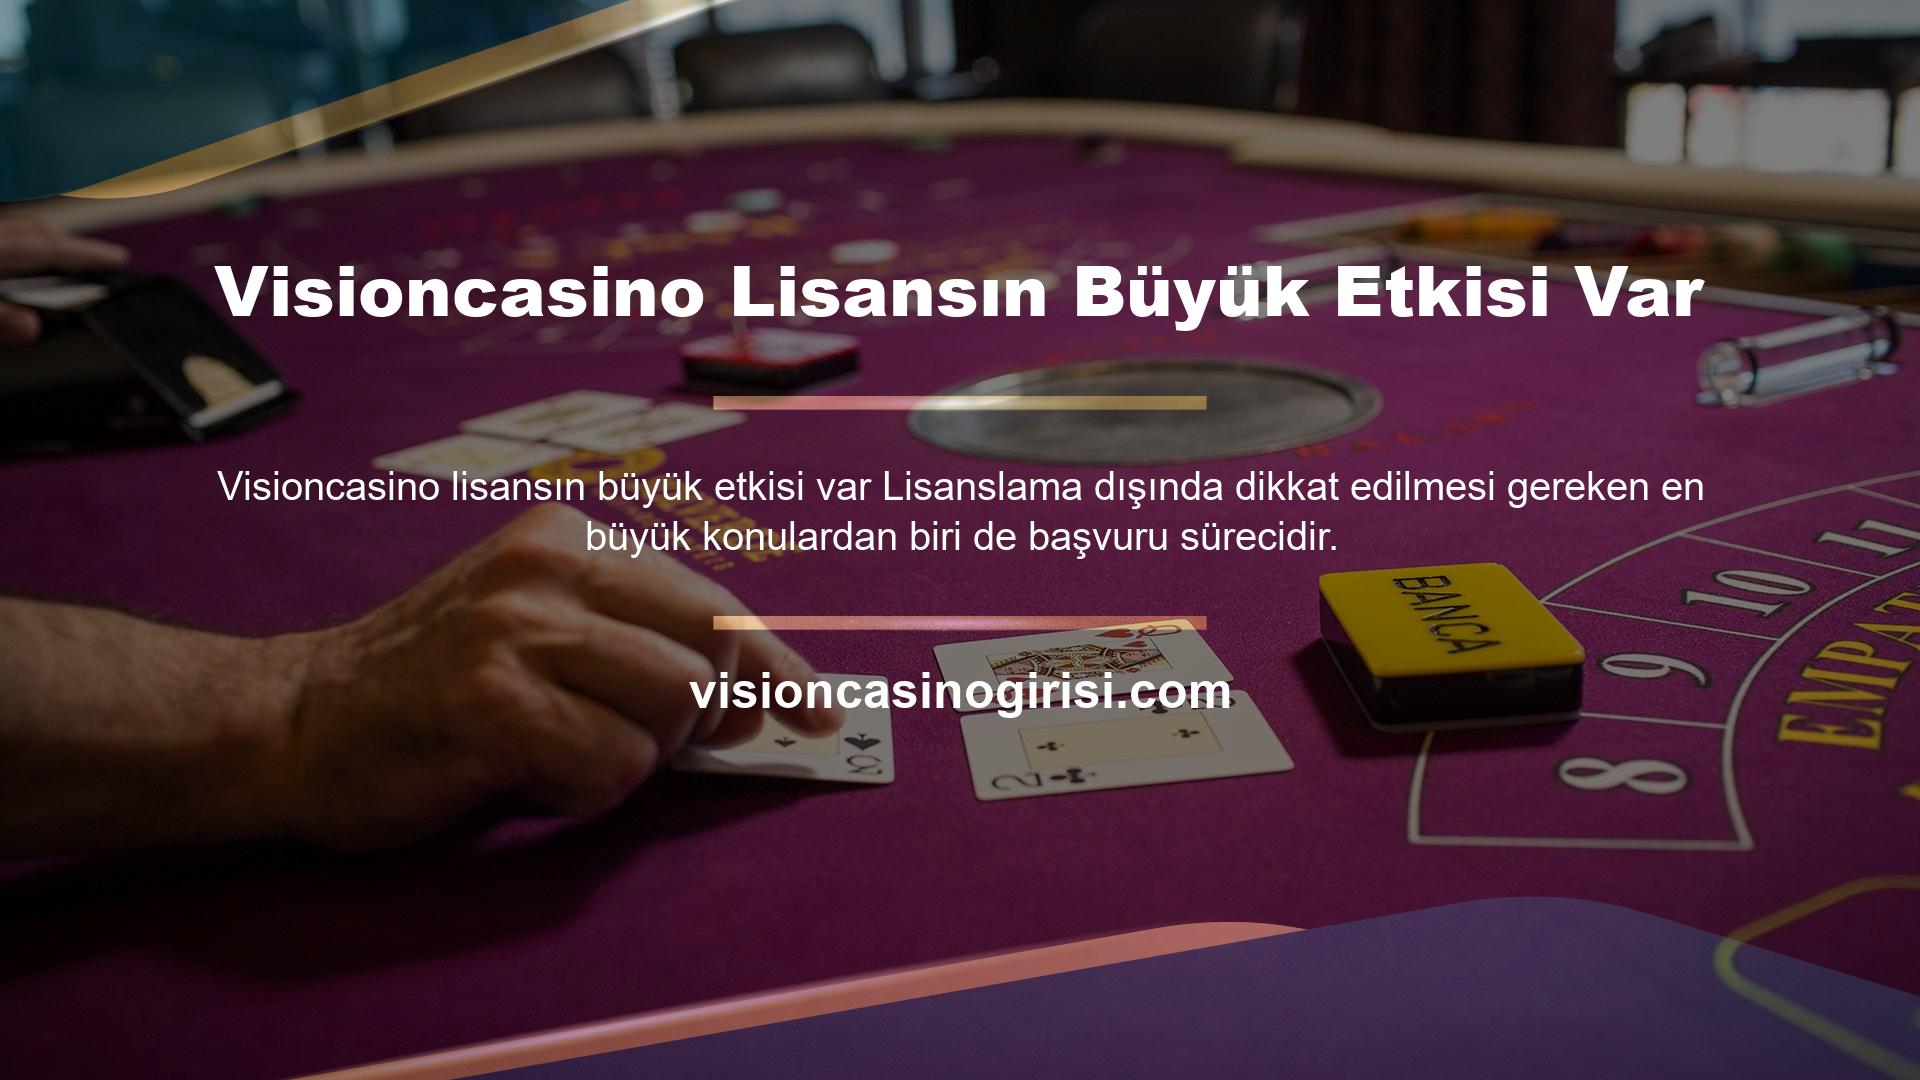 Visioncasino para yatırma yöntemi güvenlik açısından oldukça hızlı ve gelişmiş olup, birçok kumar oyununa katılmış olan kişiler rahatlıkla para çekebilmektedir